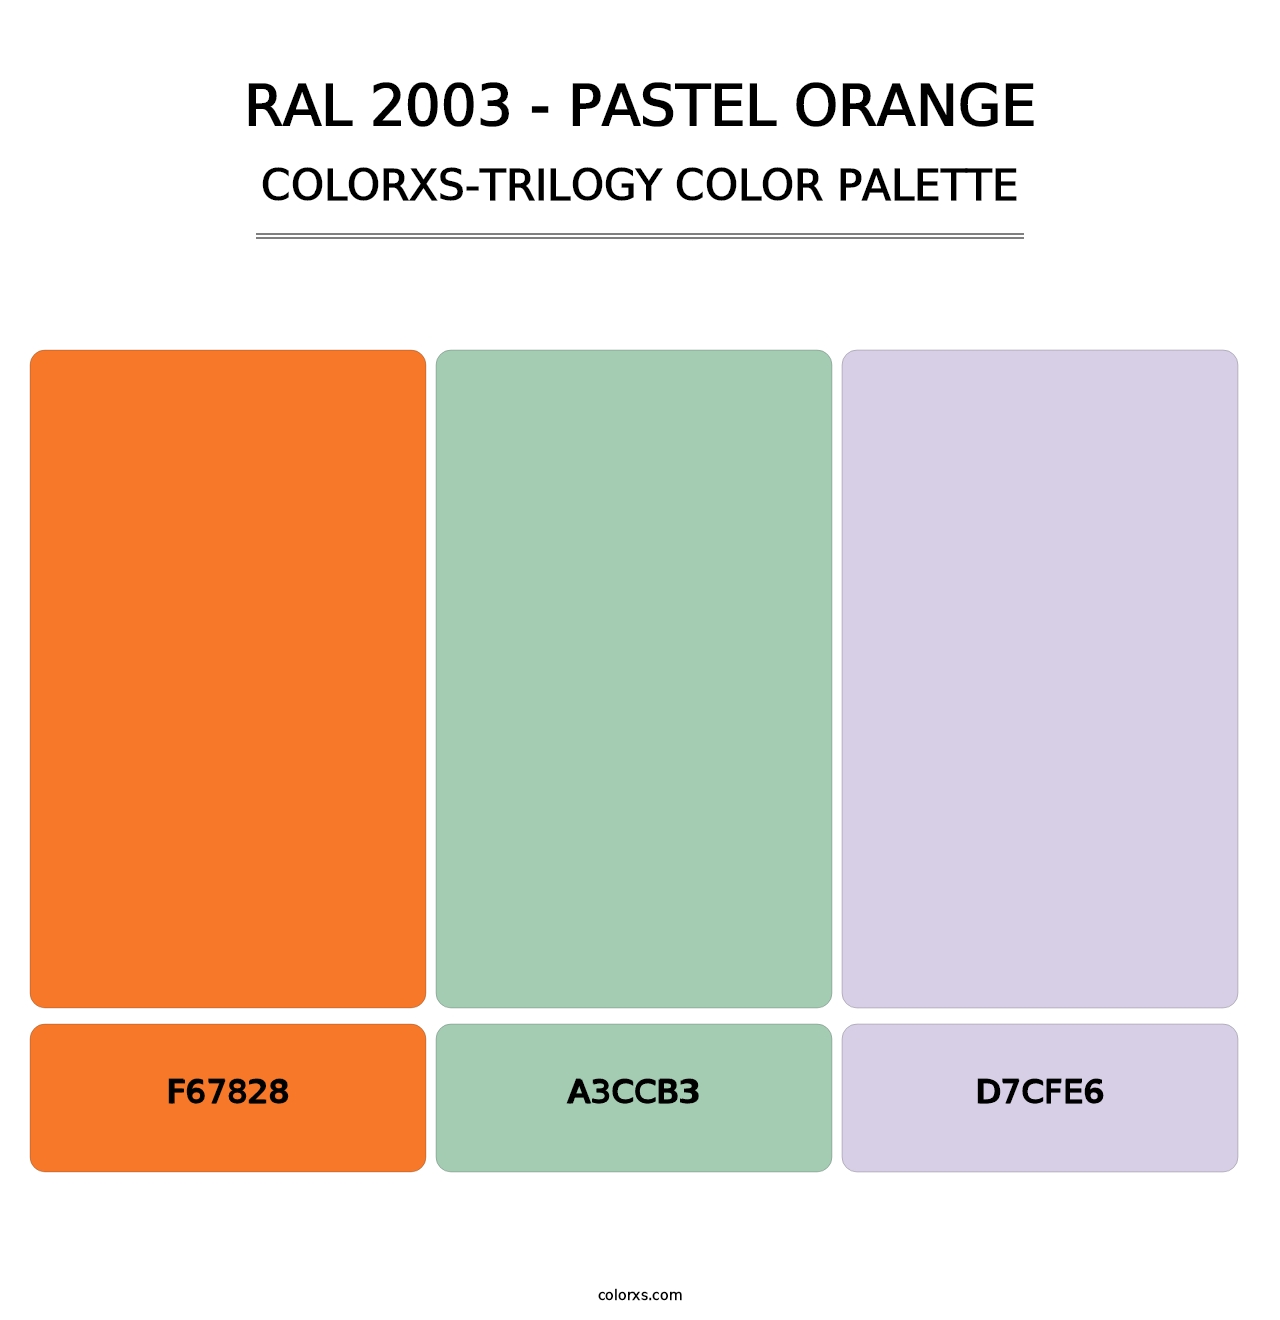 RAL 2003 - Pastel Orange - Colorxs Trilogy Palette